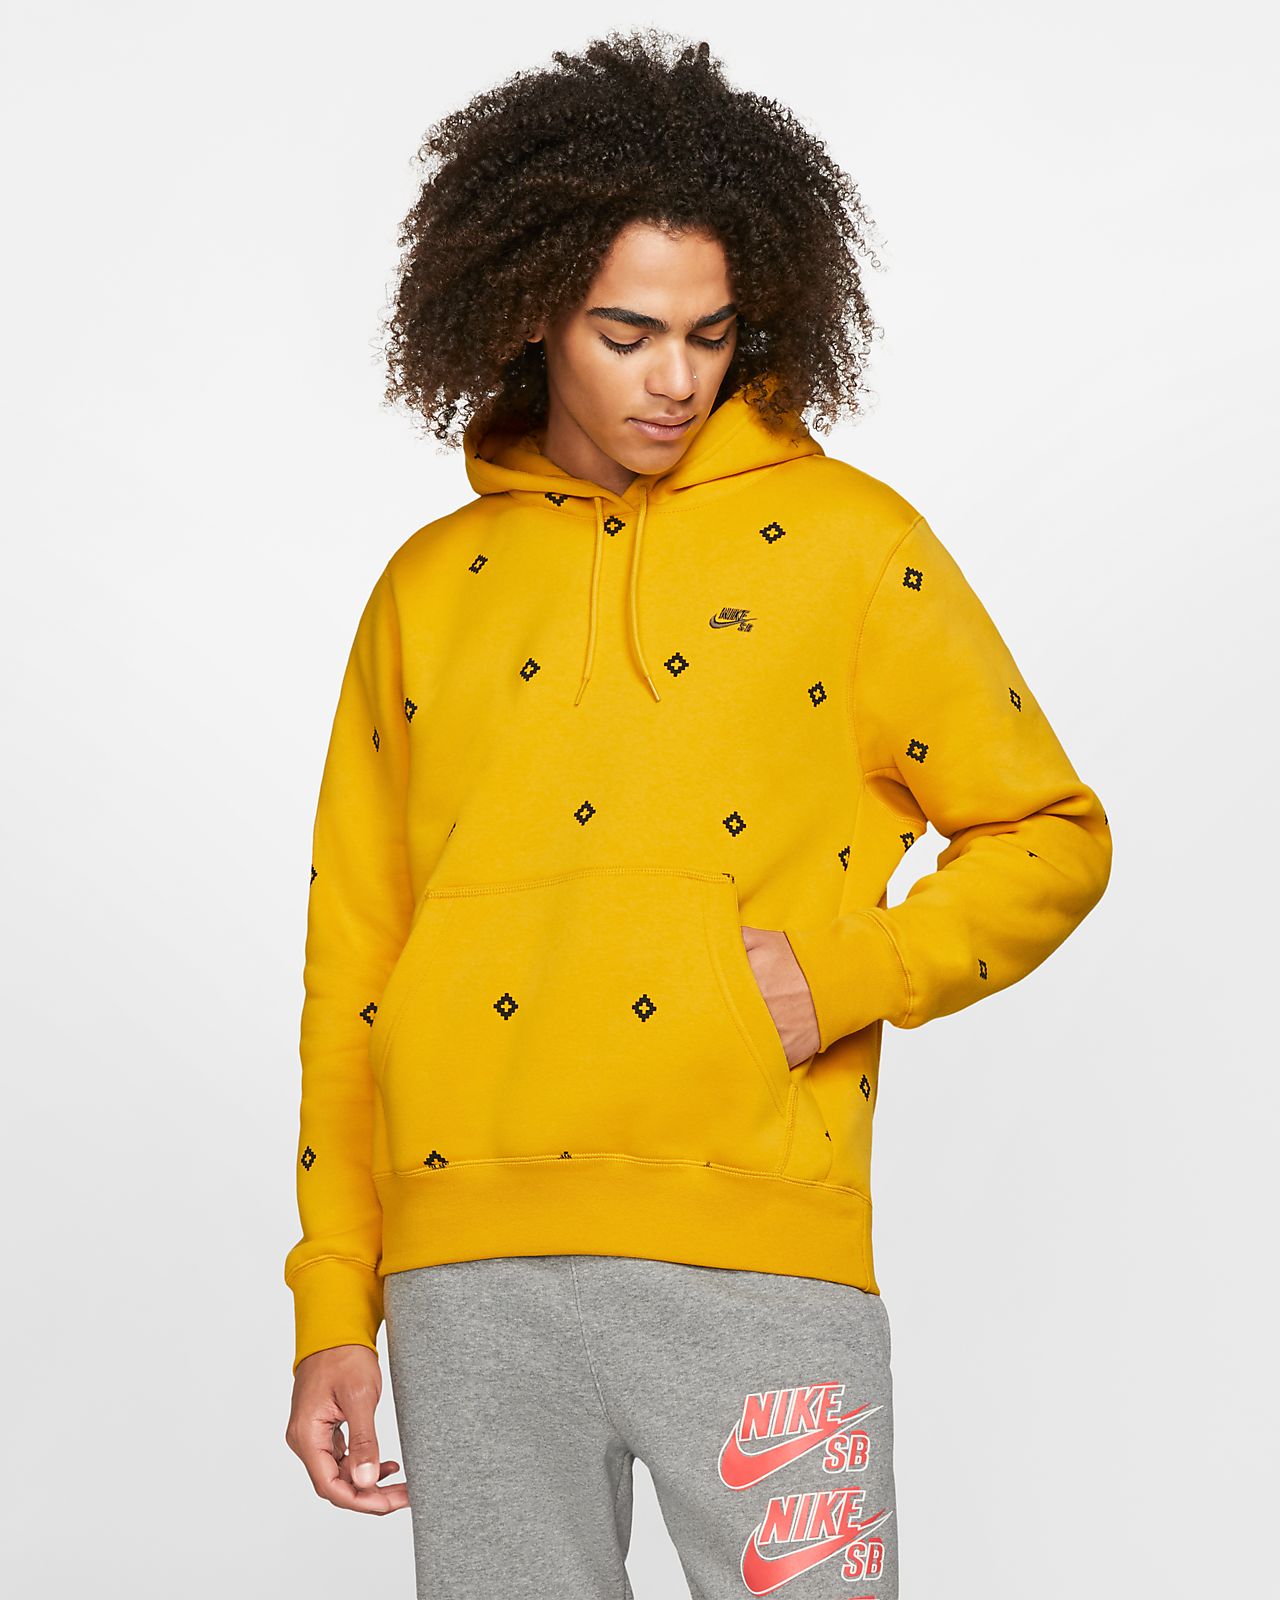 Printed Pullover Skate Hoodie. Nike FI